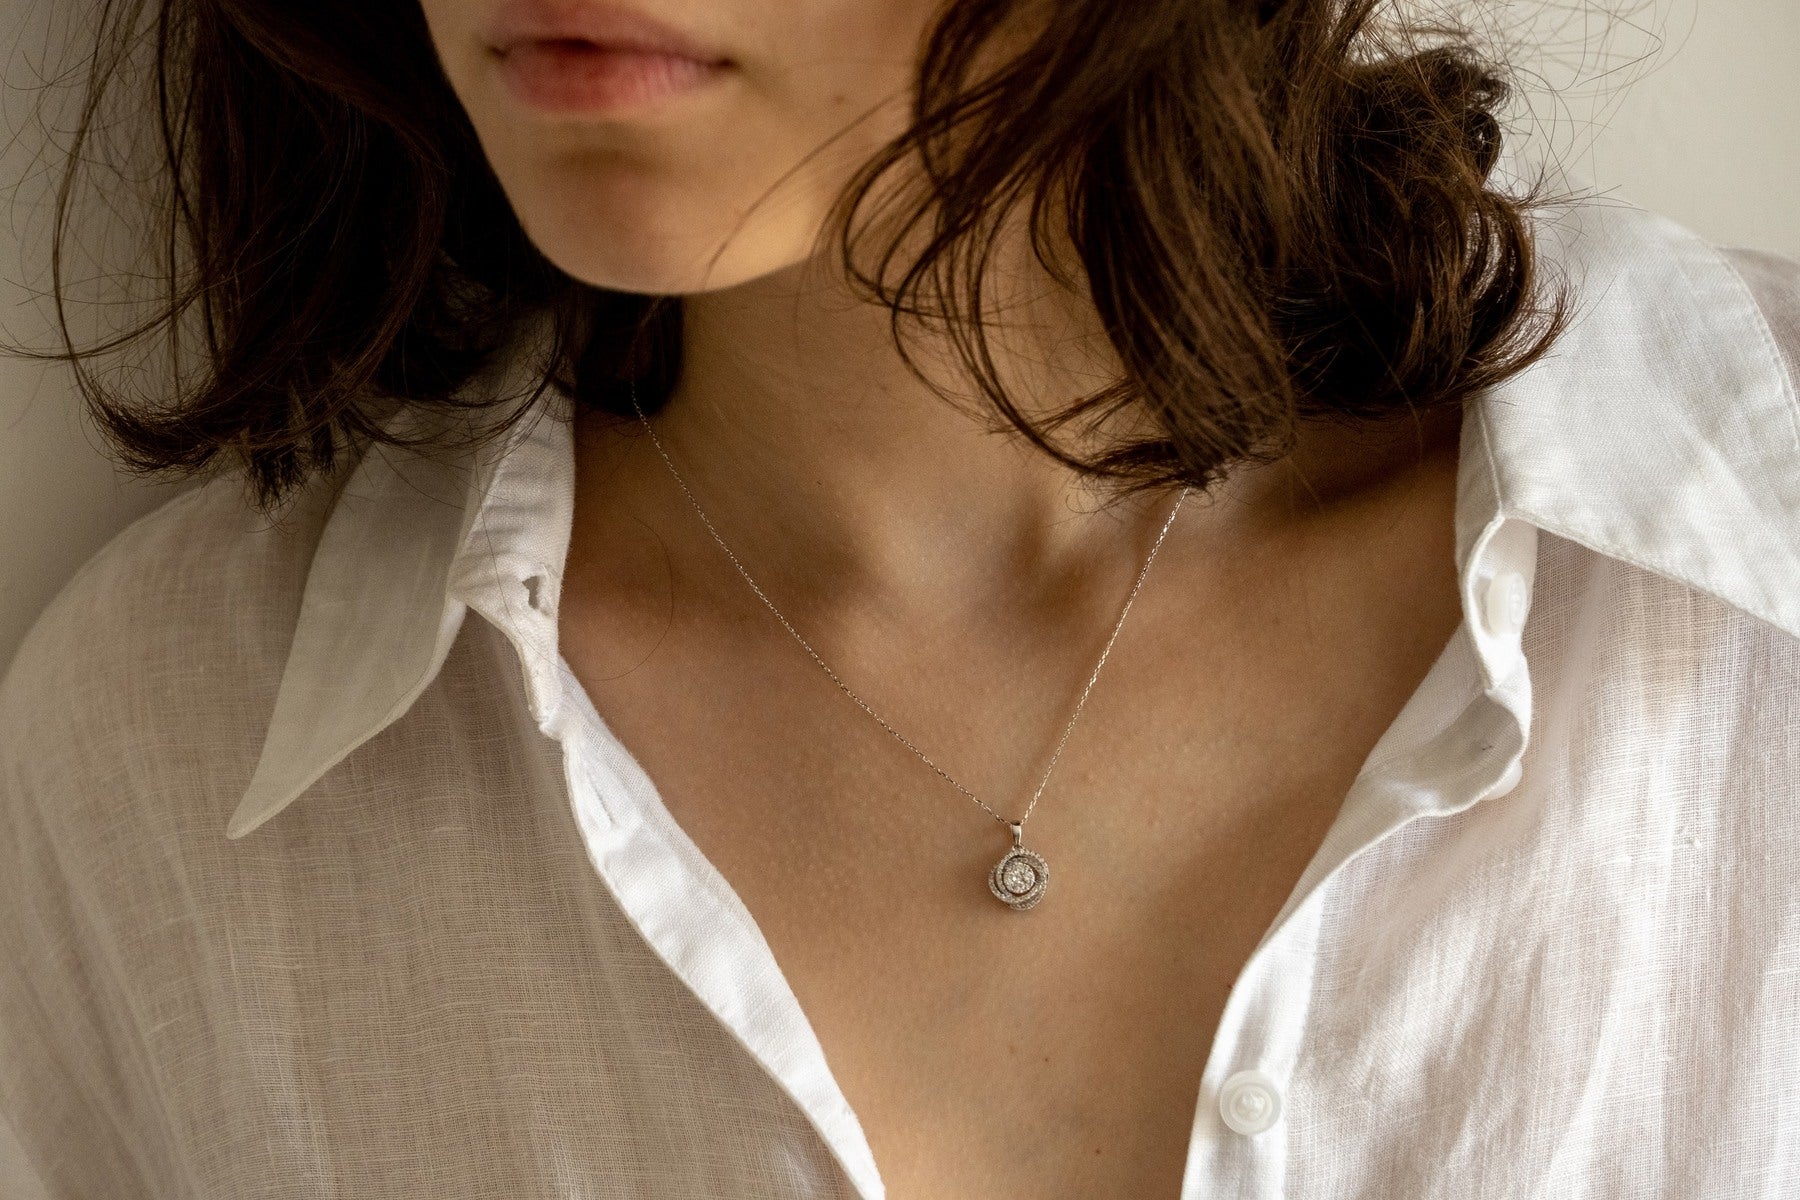 Cruz necklace with diamonds